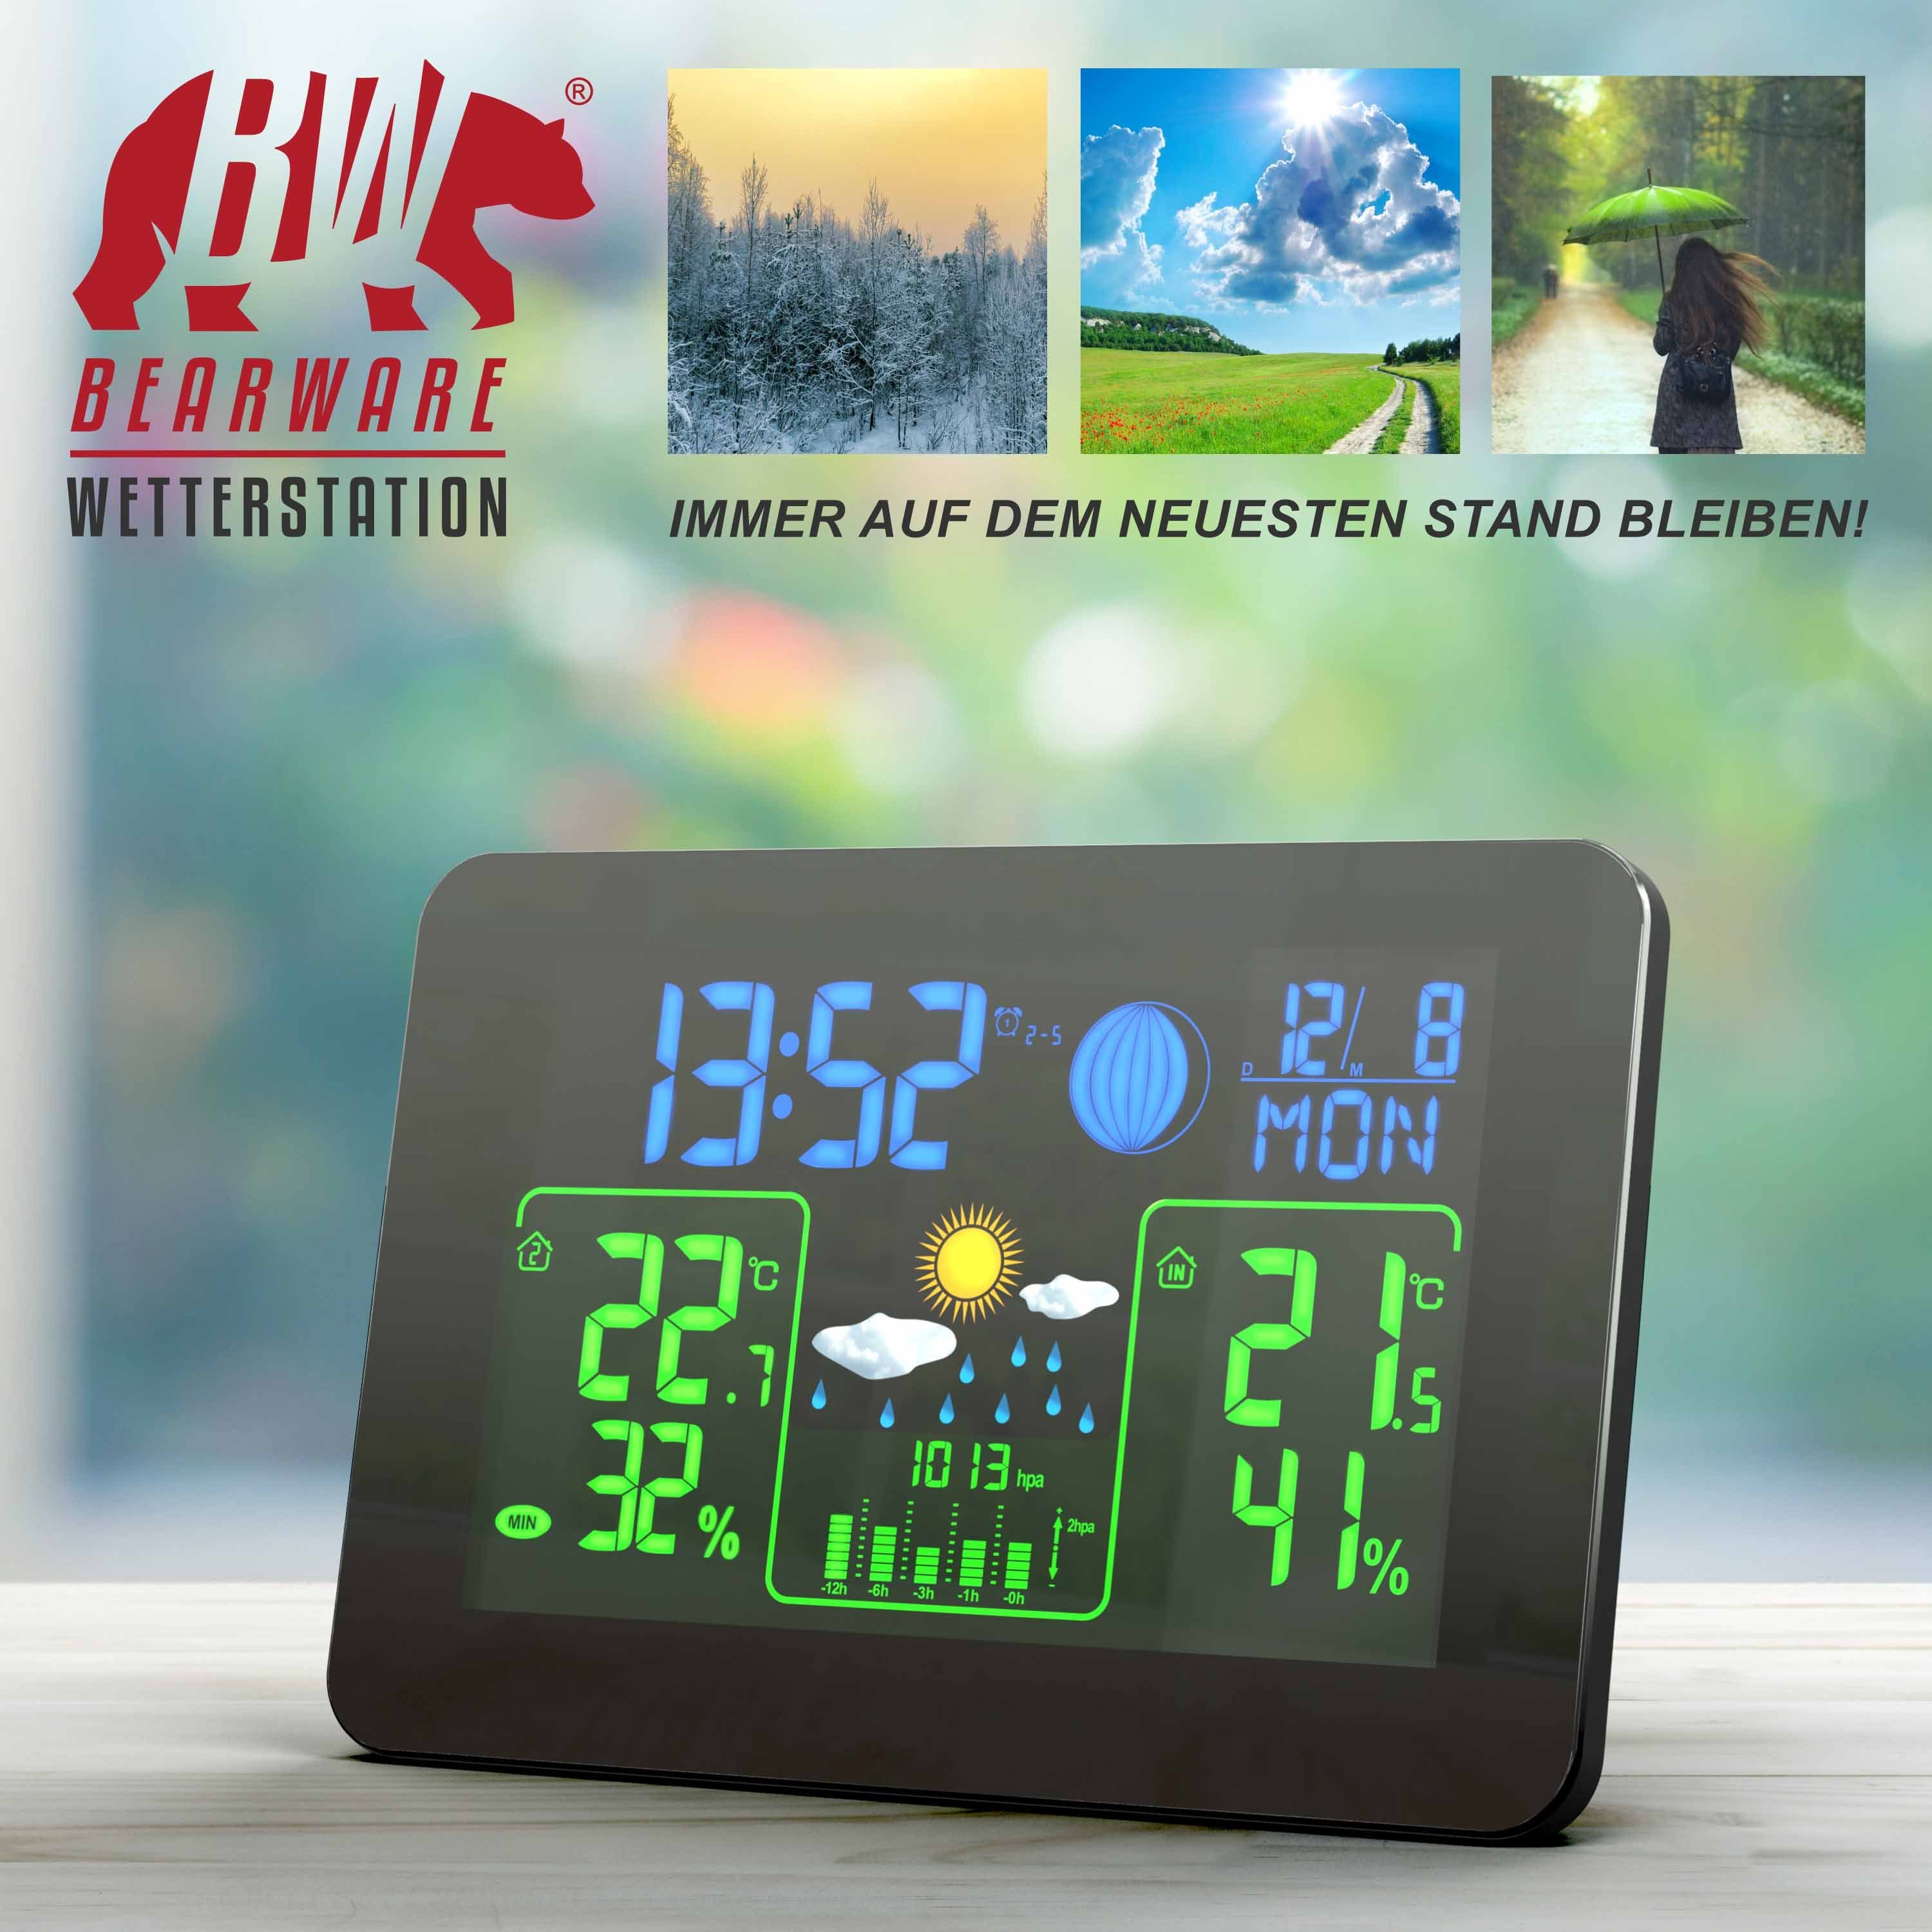 BEARWARE Wetterstation Farb (mit Wettervorhersage & Außensensor Barometer, mit uvm) Display Außensensor, Funk